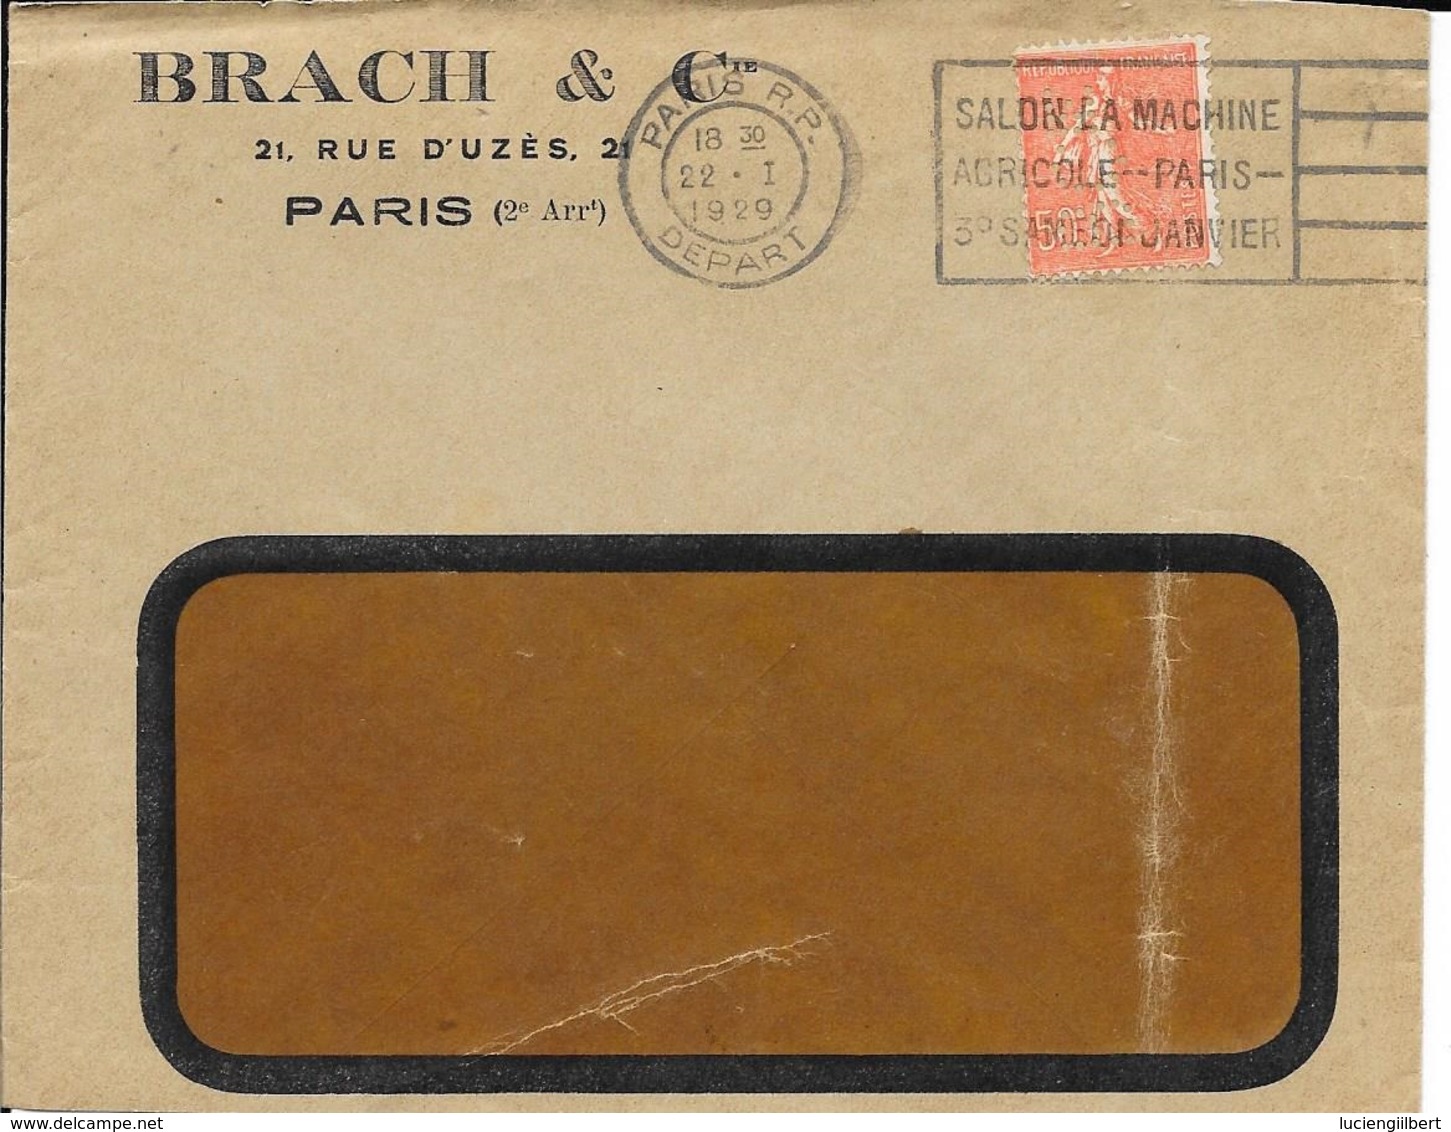 SEINE 75 - PARIS RP DEPART - FLAMME N° A 00 158 F - VOIR DESCRIPTION - 1929 - SUR ENVELOPPE .BRACH ET CIE - Oblitérations Mécaniques (flammes)